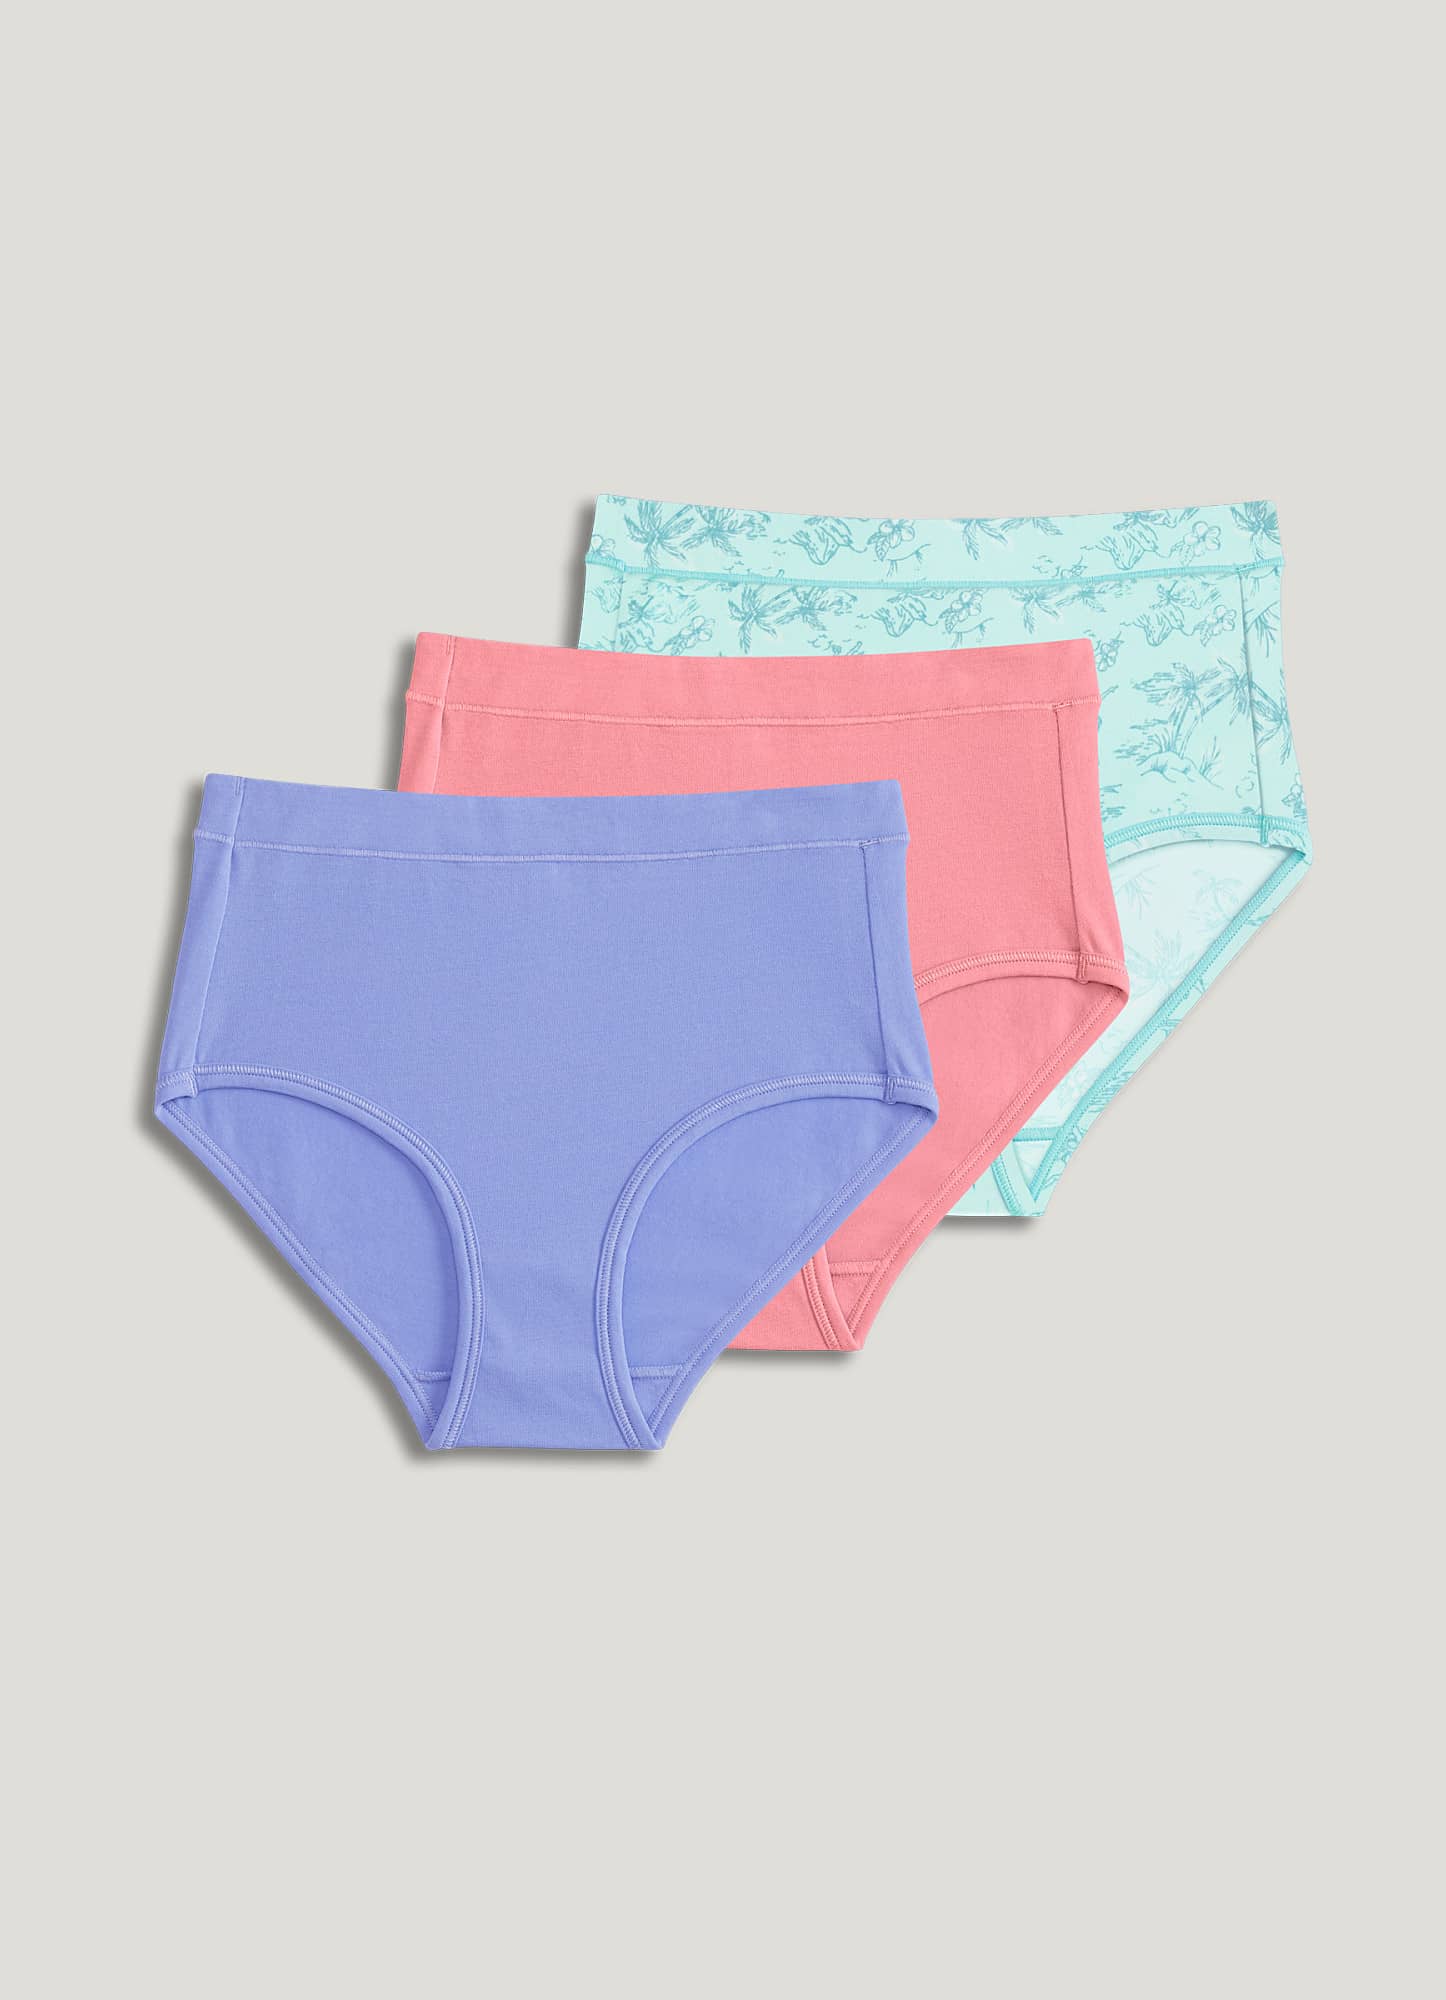 3Pack Big Girls' Underwear Kids Super Soft Stretch Cotton Panties